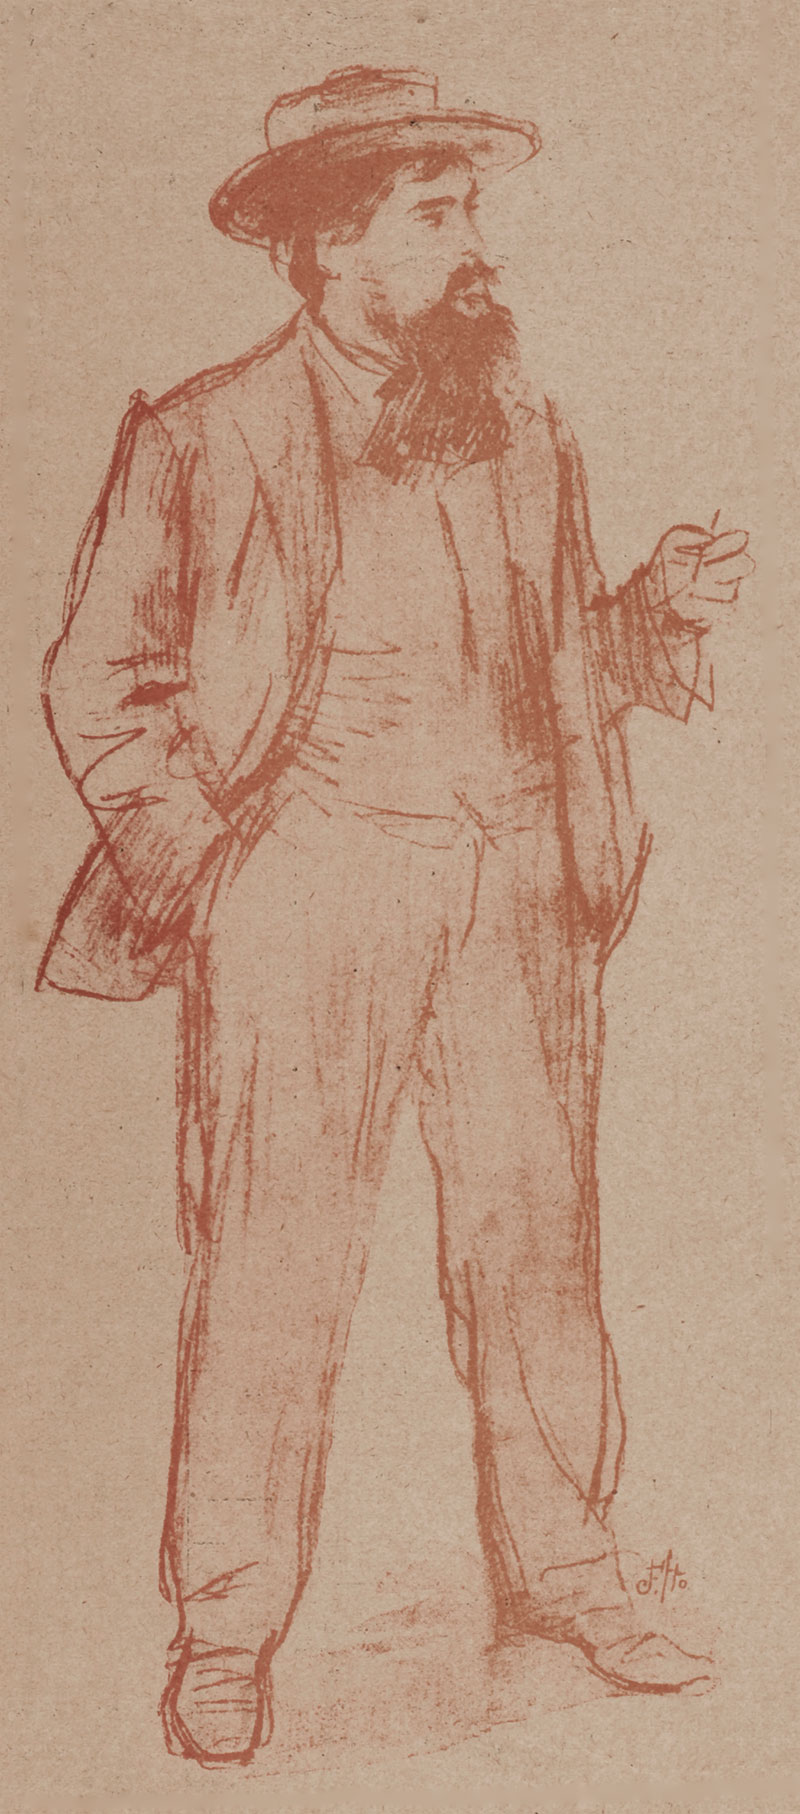  Retrato de Joan Brull por Ramon Casas, 1898